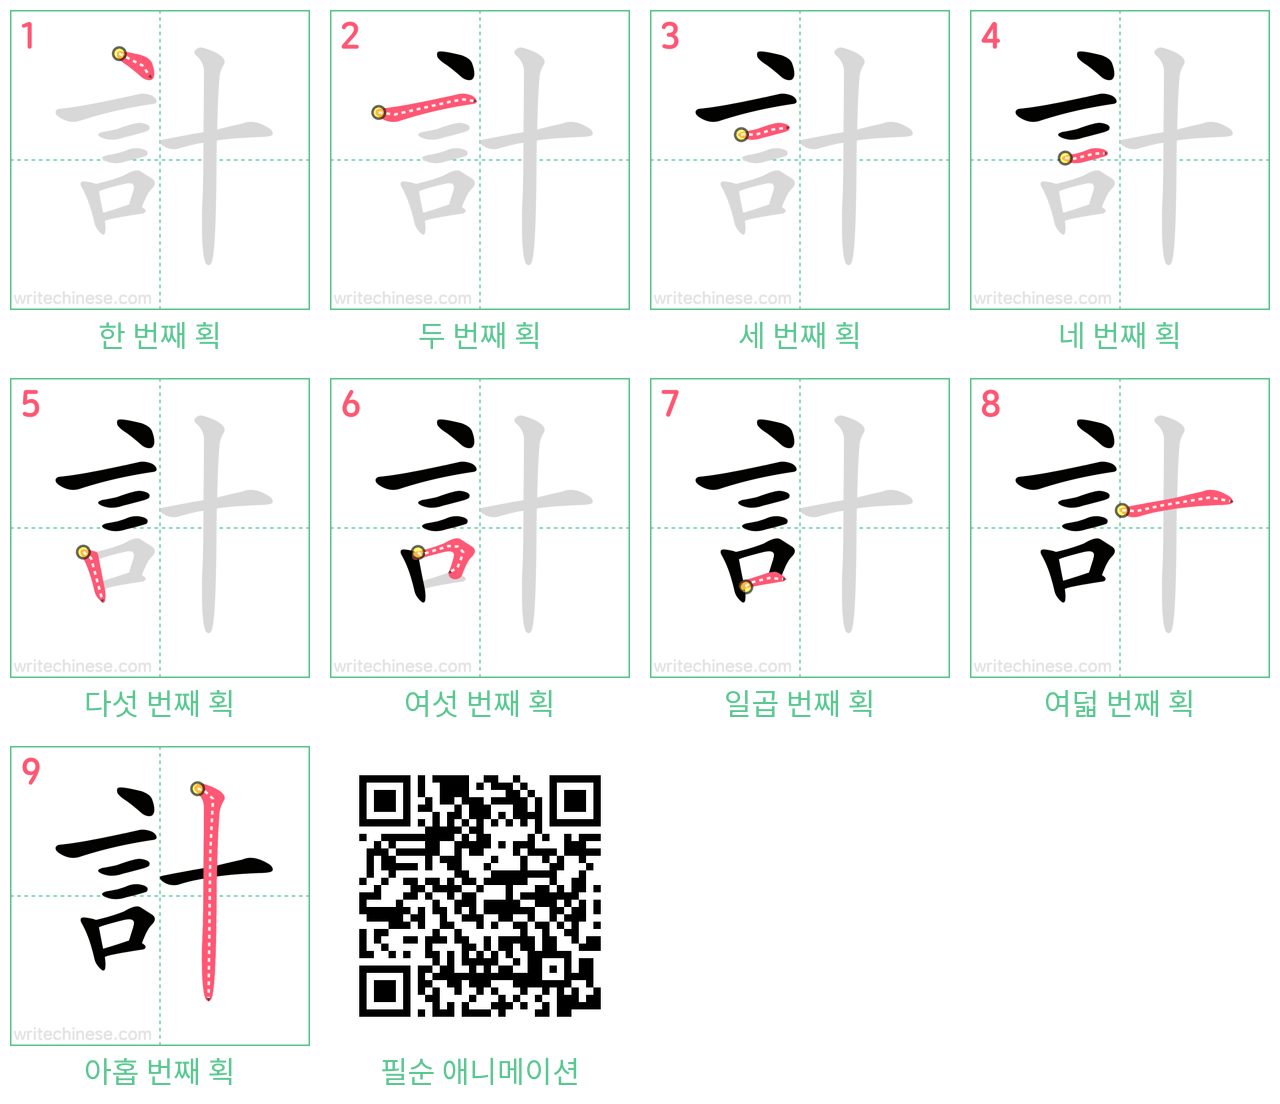 計 step-by-step stroke order diagrams